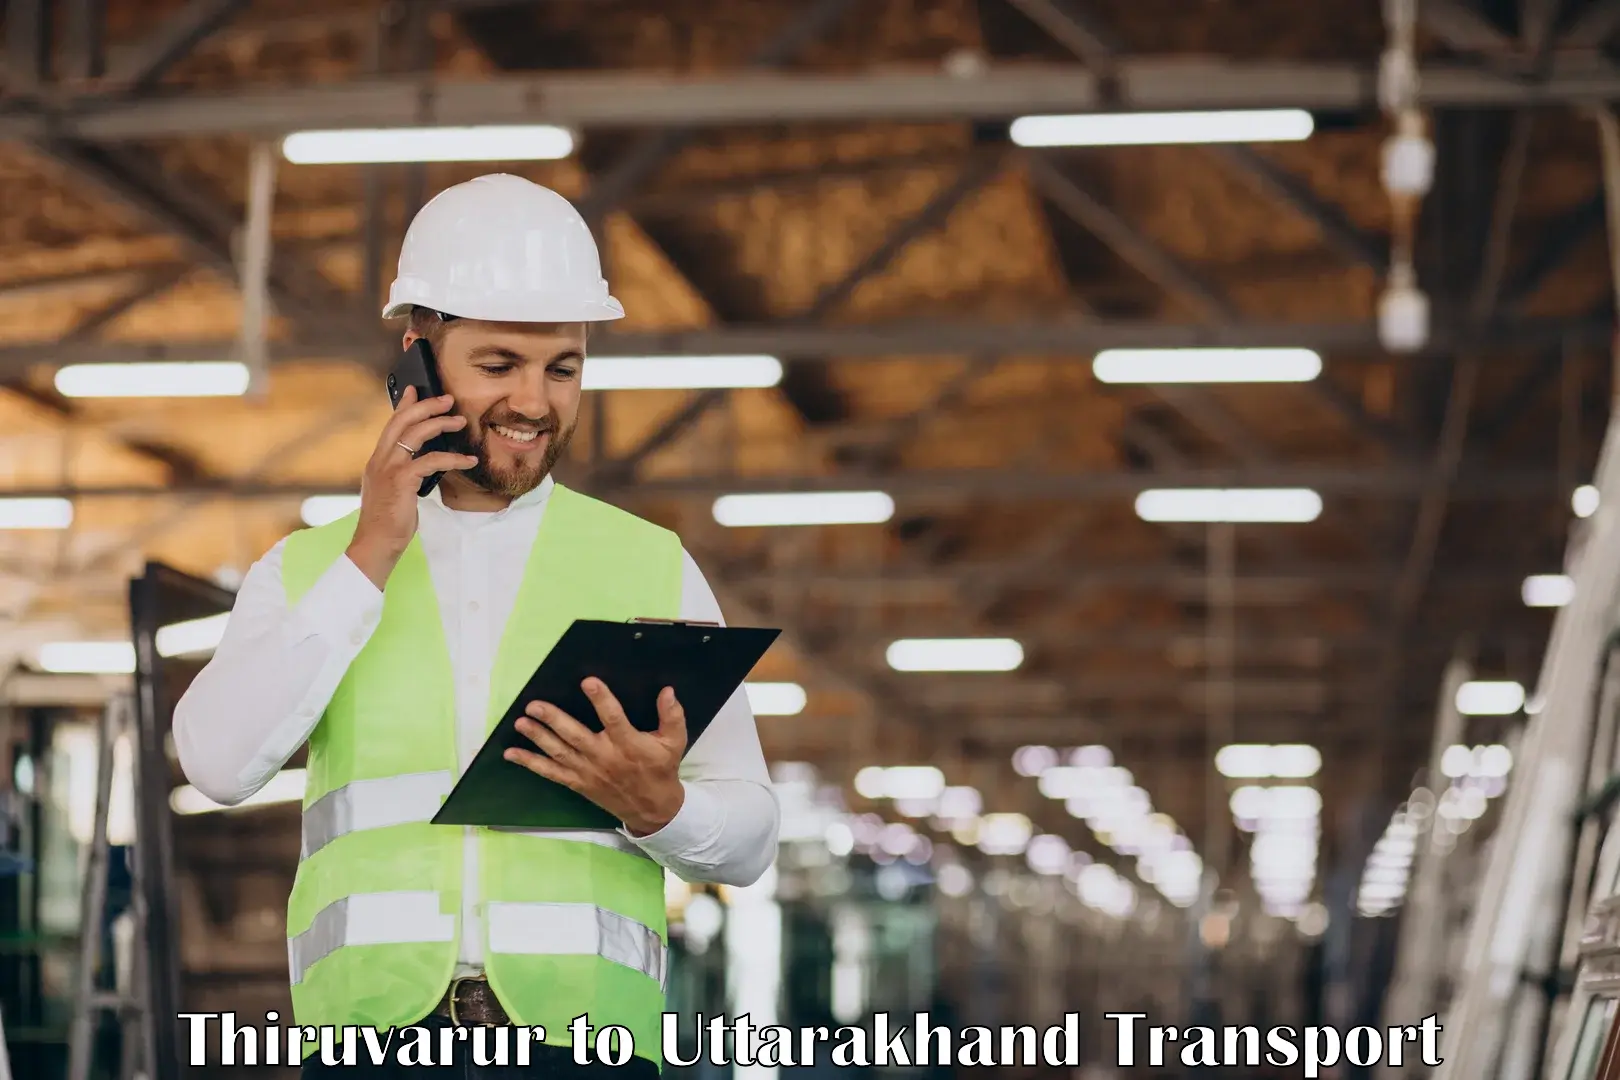 Truck transport companies in India Thiruvarur to Rishikesh